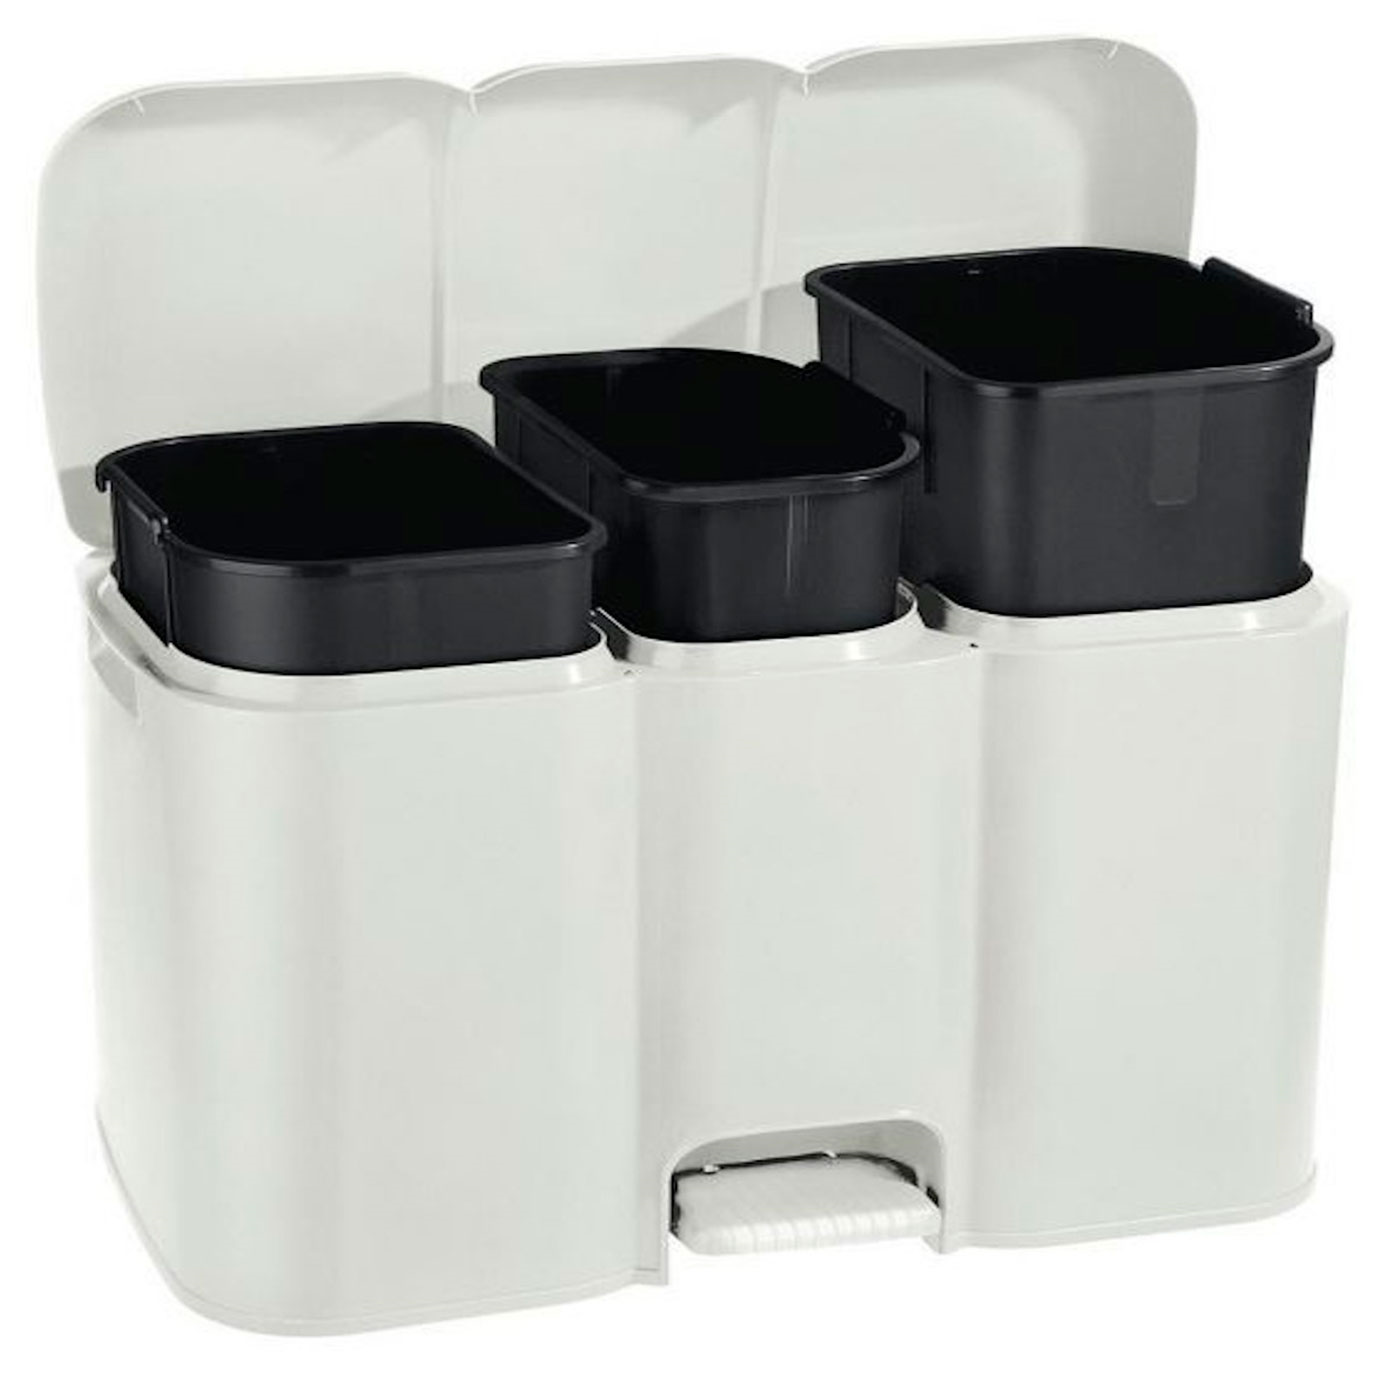 Tradineur - Cubo de basura de plástico con pedal, contenedor de residuos,  papelera con separador para colocar dos bolsas, cocina